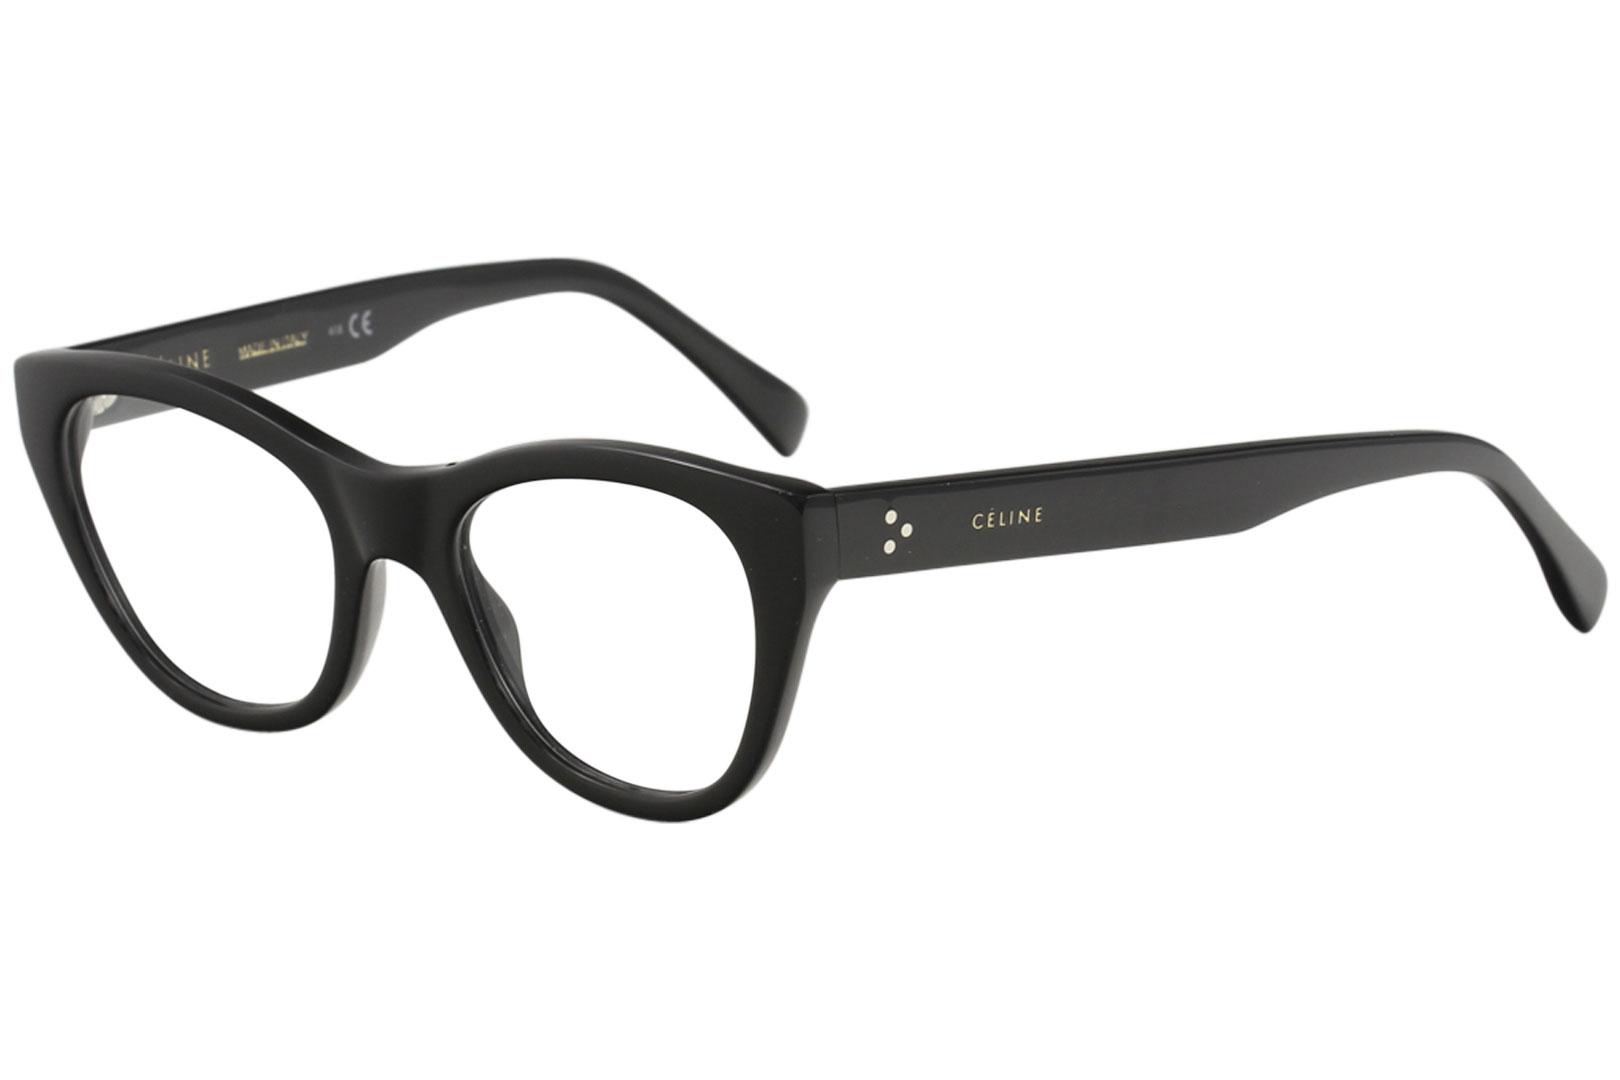 Celine Women's Eyeglasses CL50005I 001 Black Full Rim Optical Frame